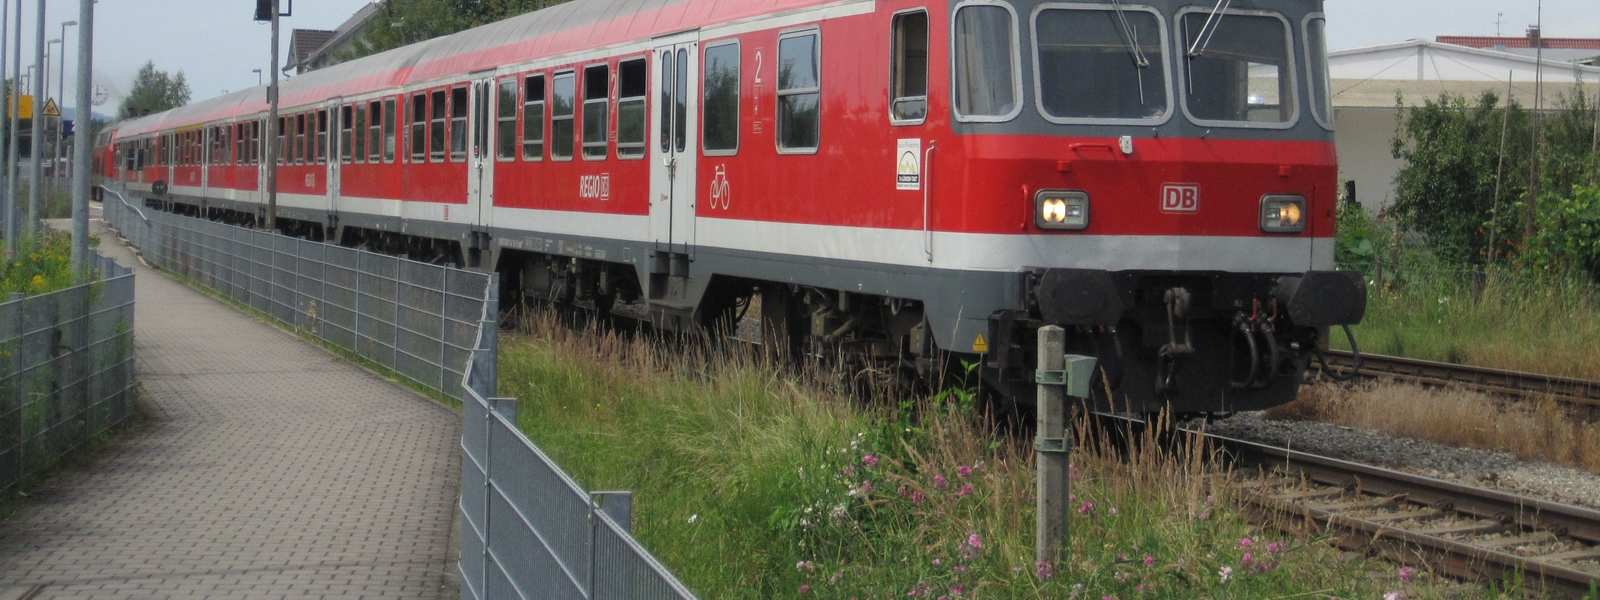 Elektrifizierung Hochrheinstrecke und Bodensee-Gürtelbahn Teil B2 Kostenschätzung Bodensee-Gürtelbahn ECH-5.05-001 Version 2.